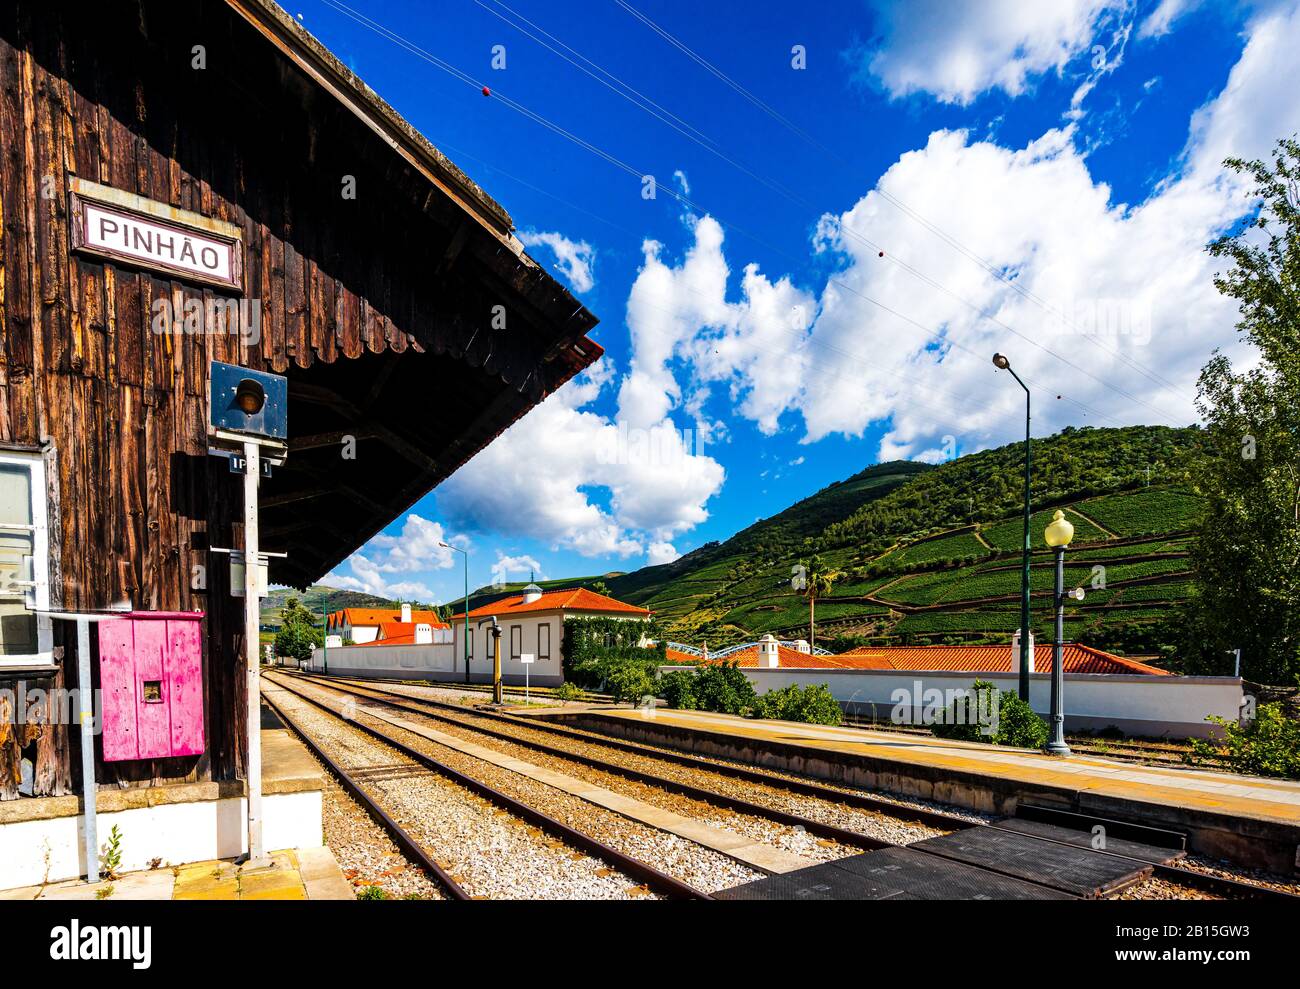 Vue sur la gare de Pinhao dans la vallée du douro, au Portugal Banque D'Images